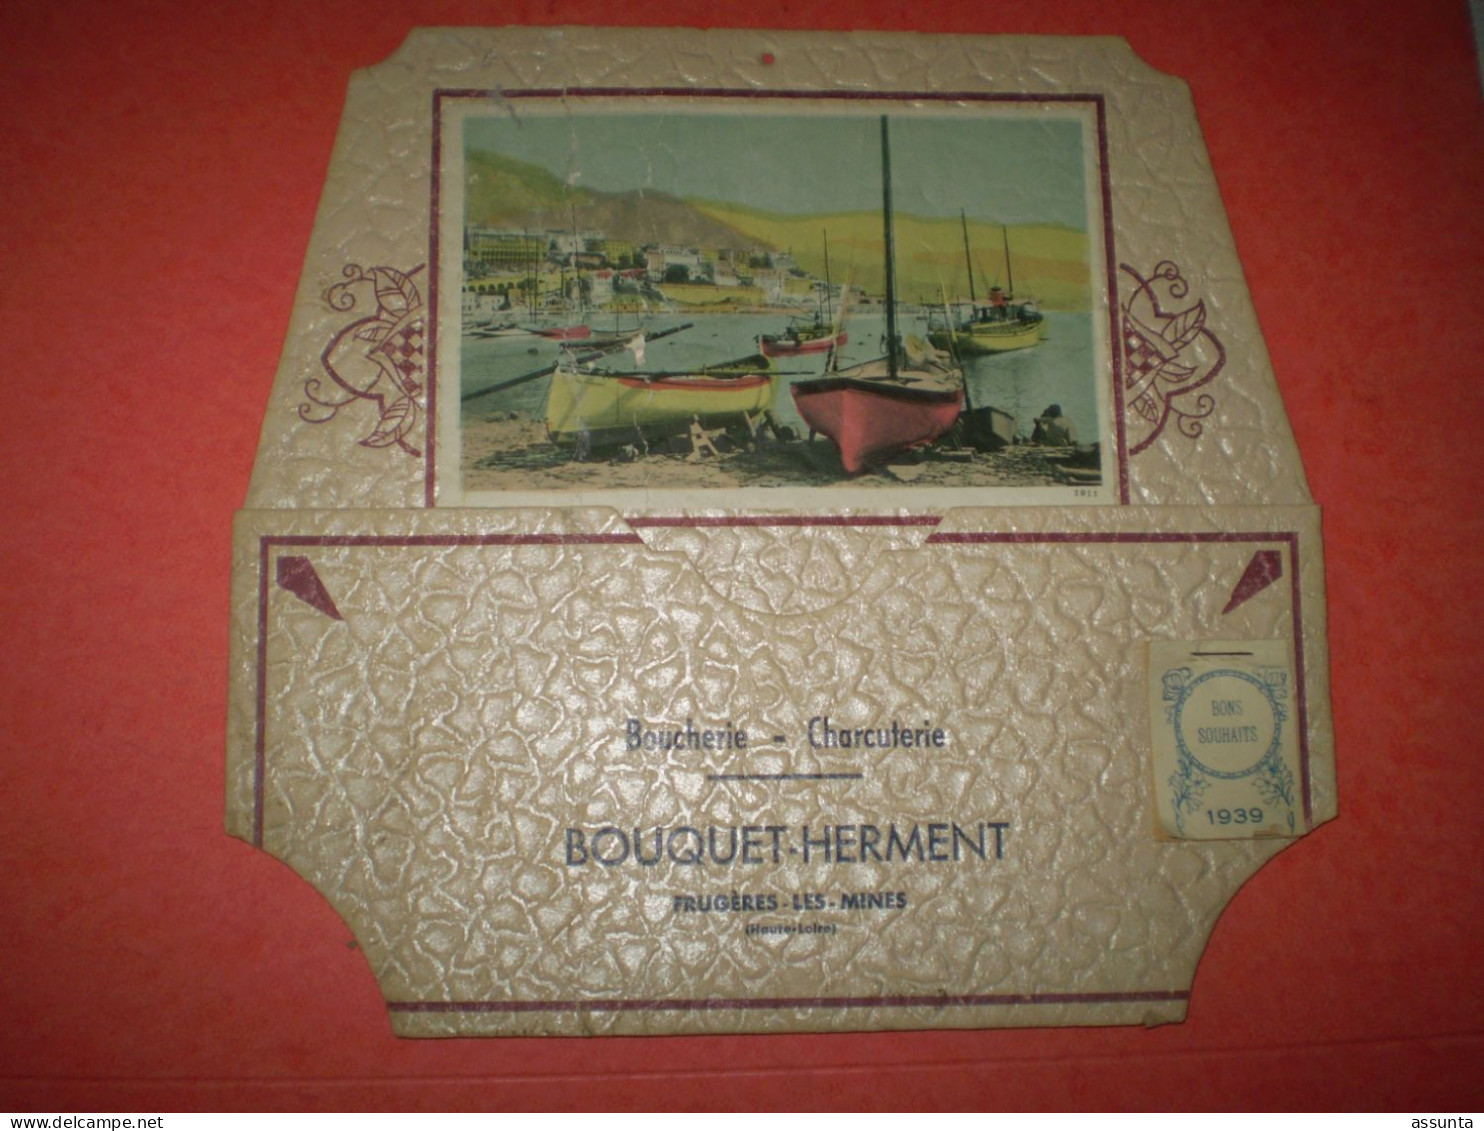 Vide Poche Bouquet-Herment à Frugères Les Mines, Haute Loire, Boucherie Charcuterie, Calendrier 1939 - Pubblicitari